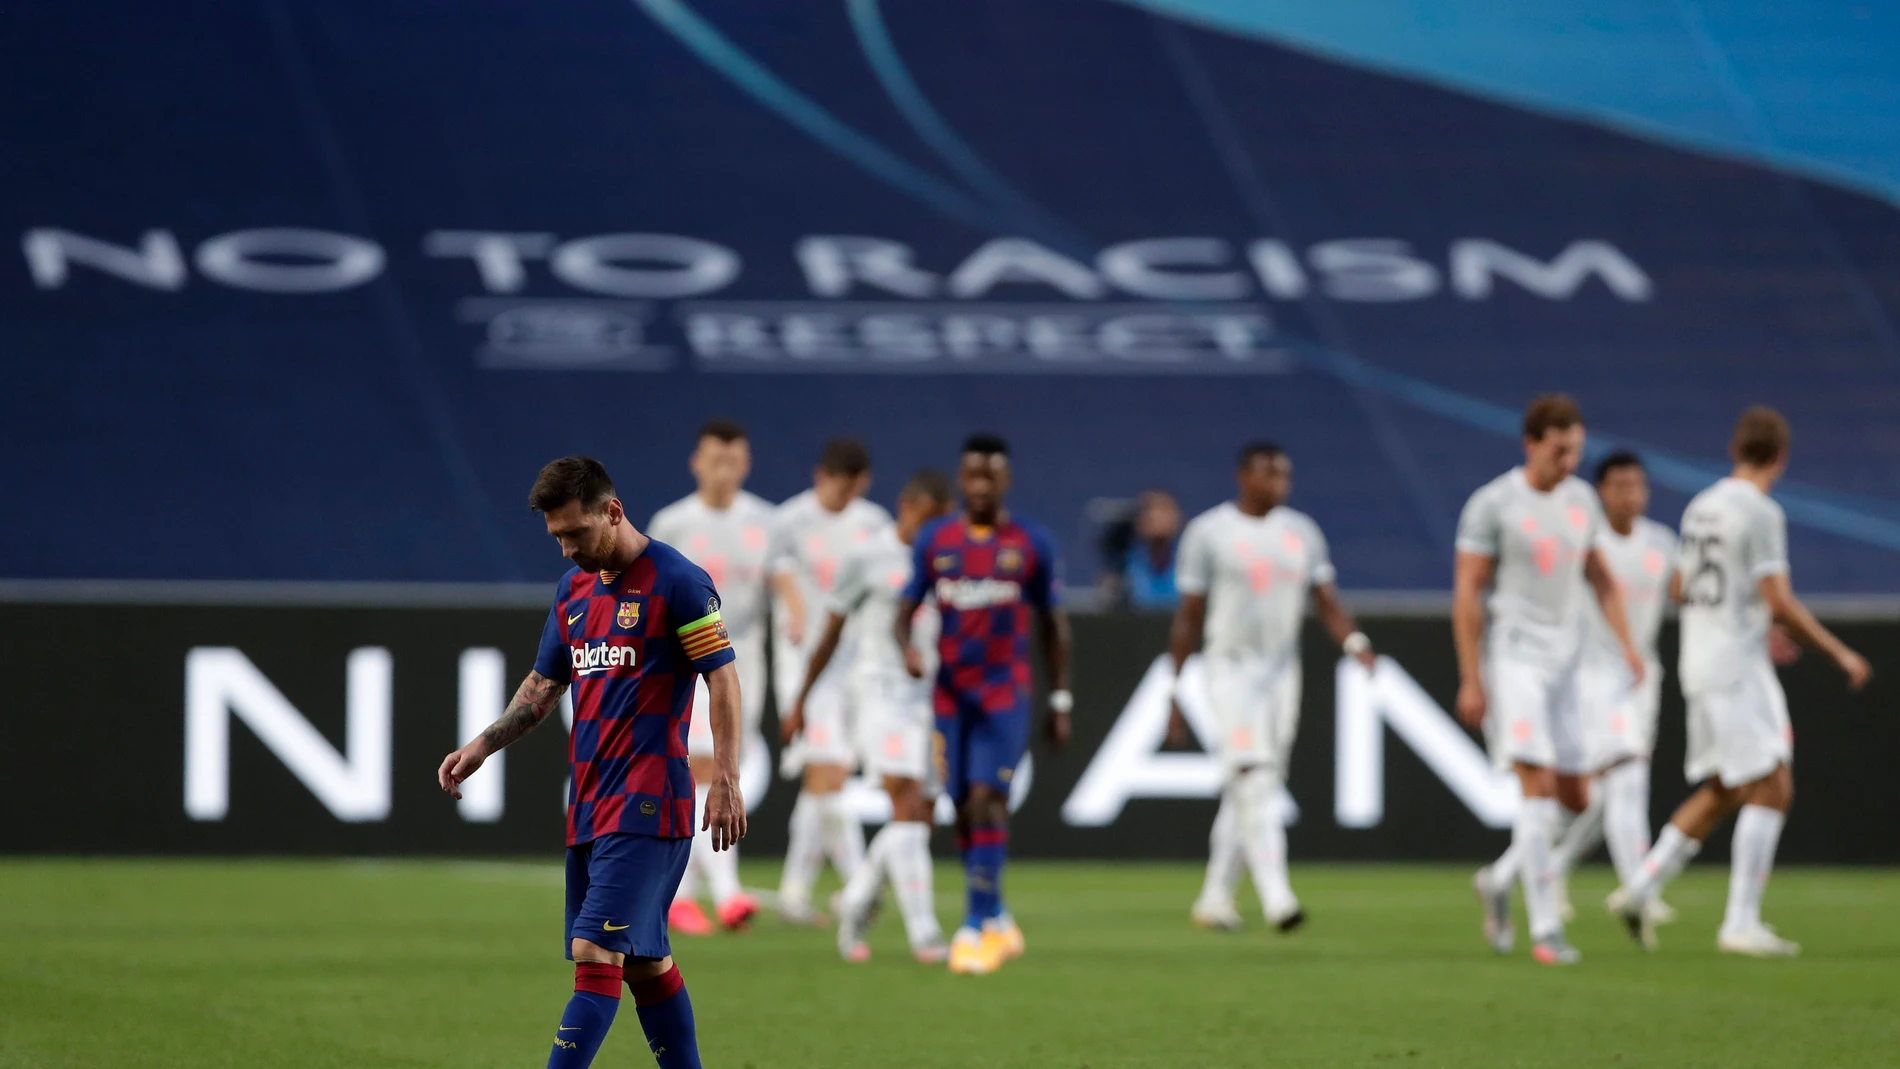 Leo Messi, cabizbajo mientras el Bayern celebra un gol